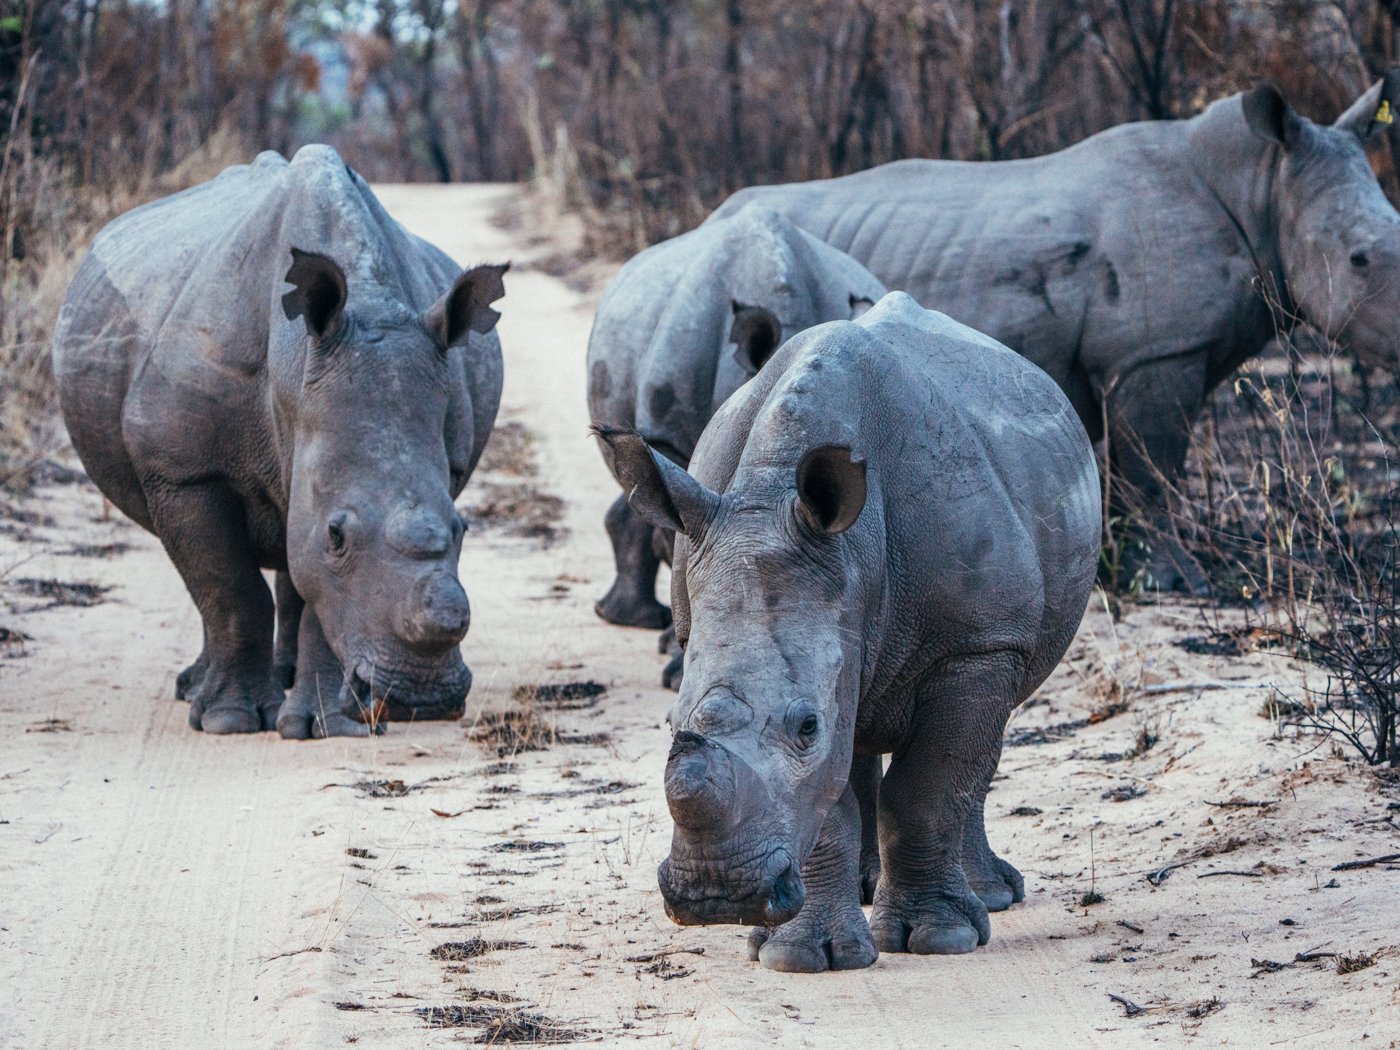 A group of rhinos walking in Safari.